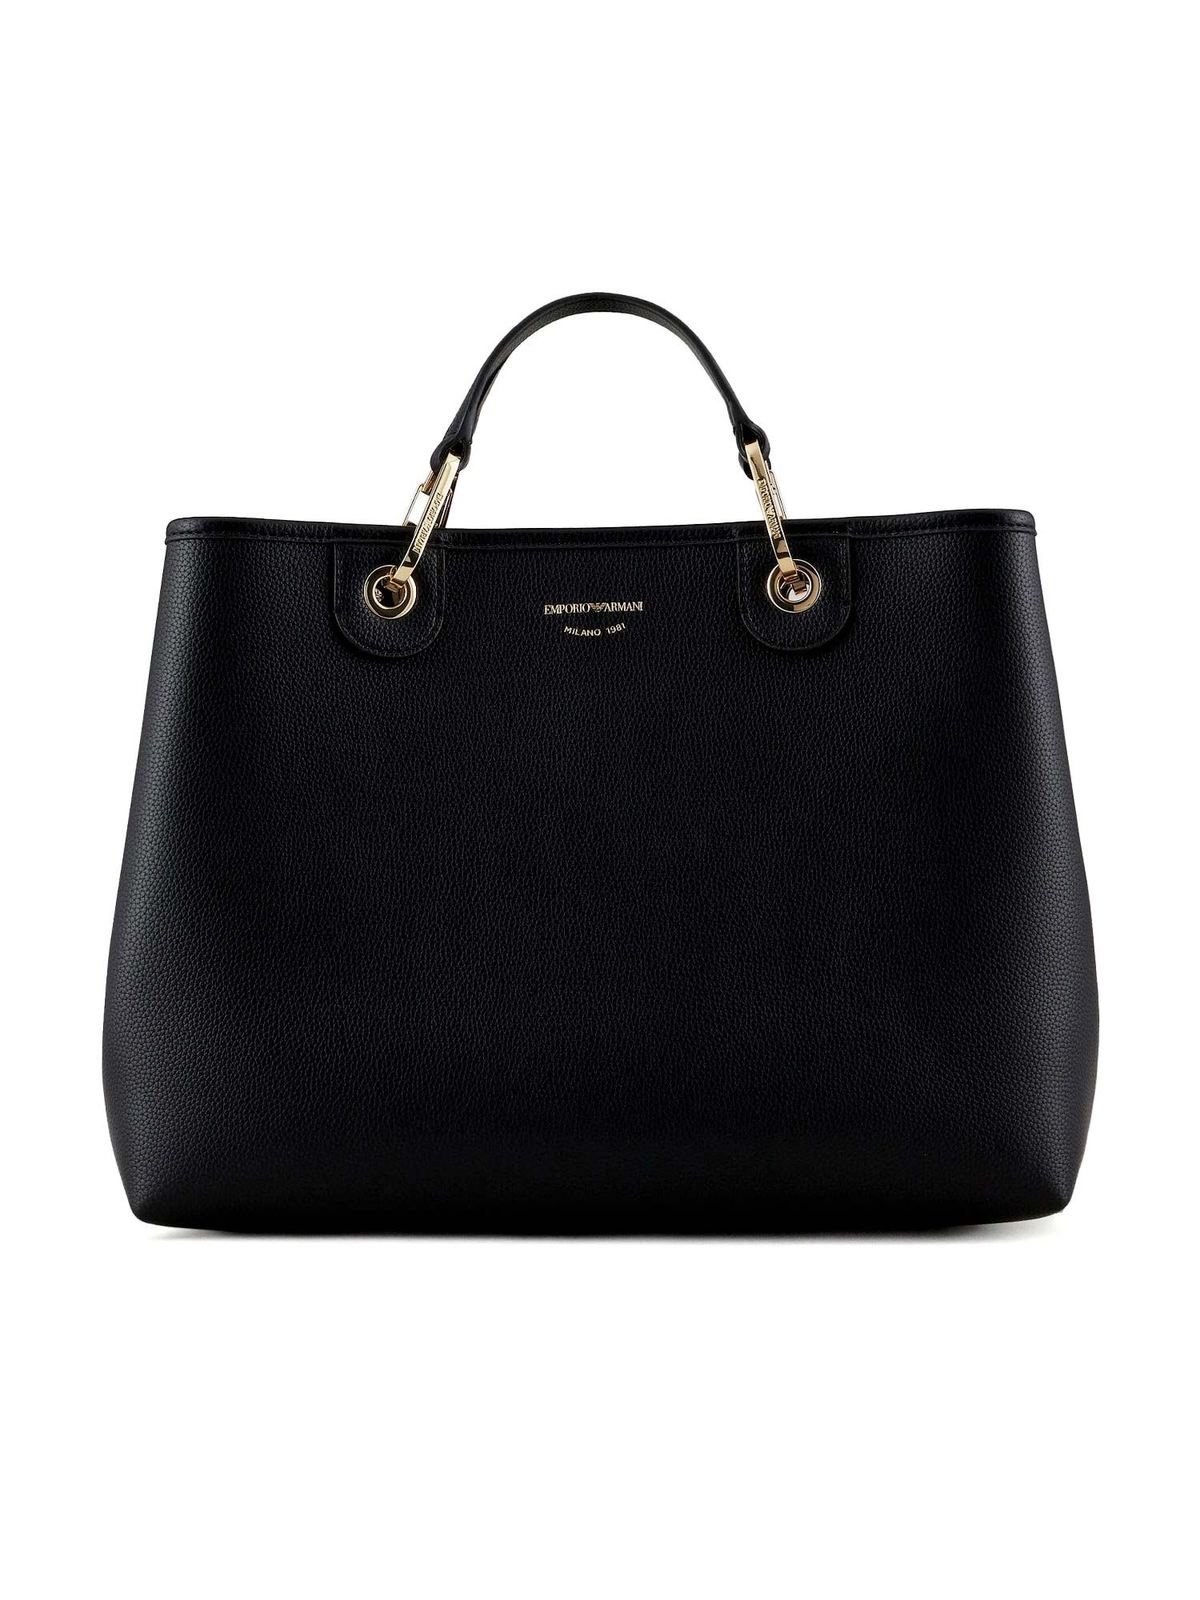 Emporio Armani Logo Handbag In Black